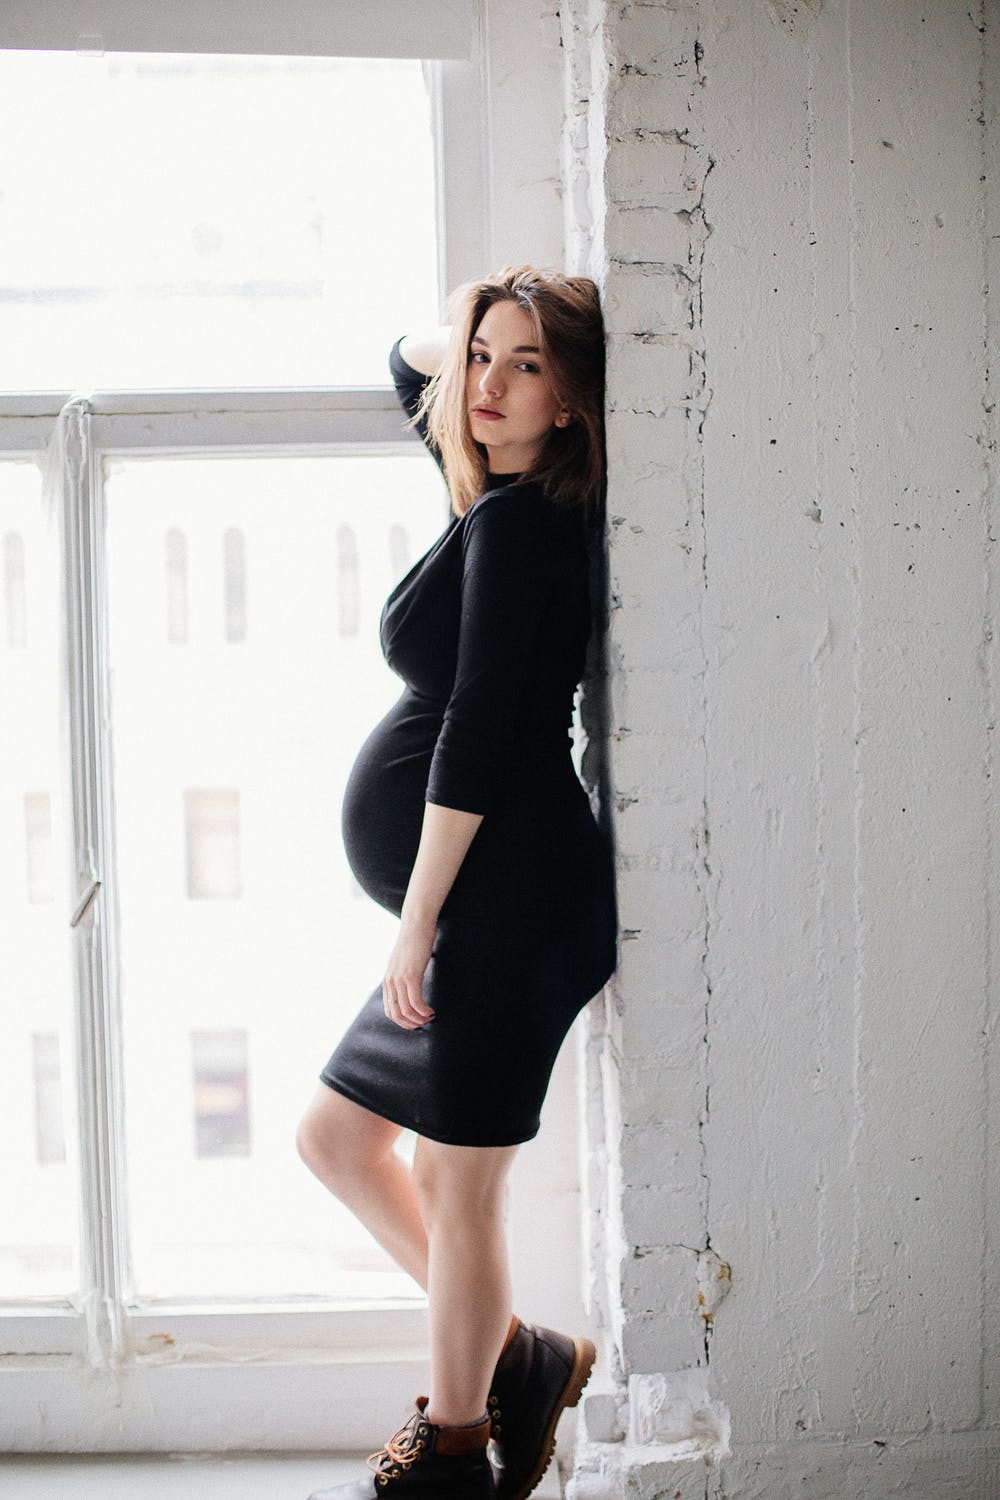 Amateurs Photo Pregnant